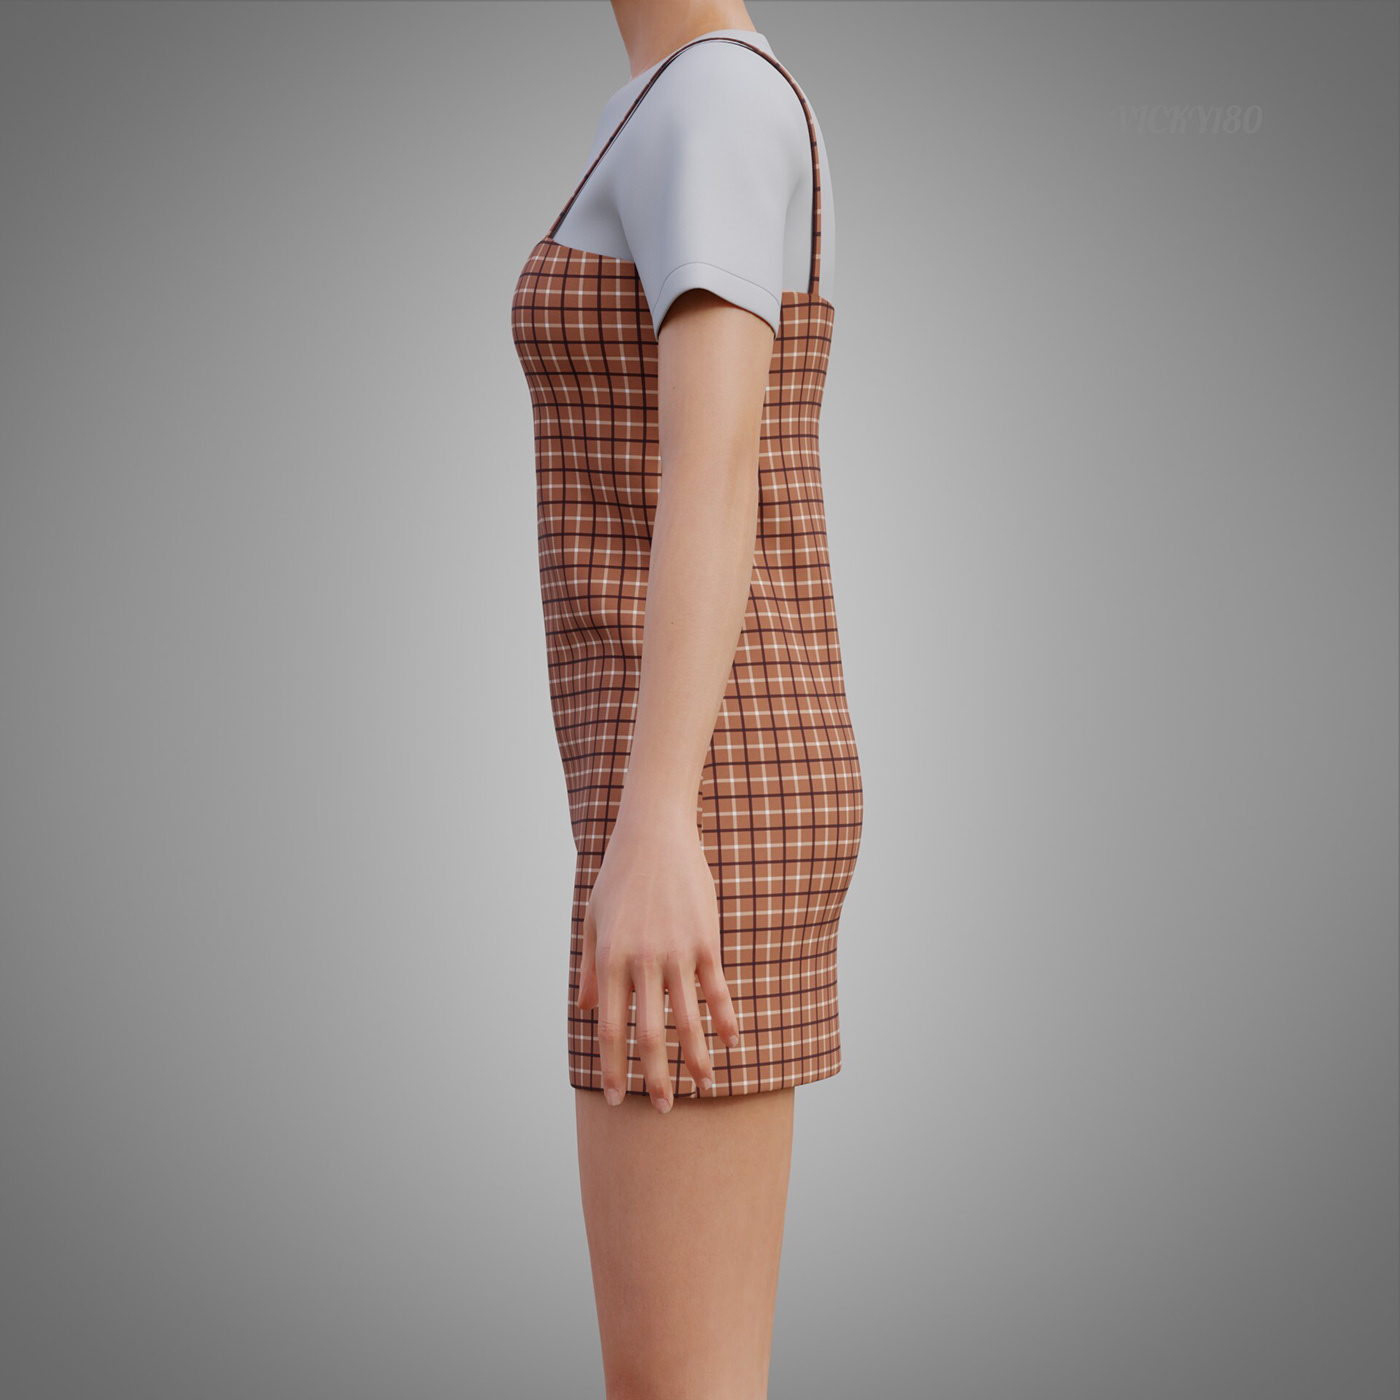 plaid design Fashion  model woman ladies girls 3D model 3d outfit 3d t-shirt plaid camisole dress